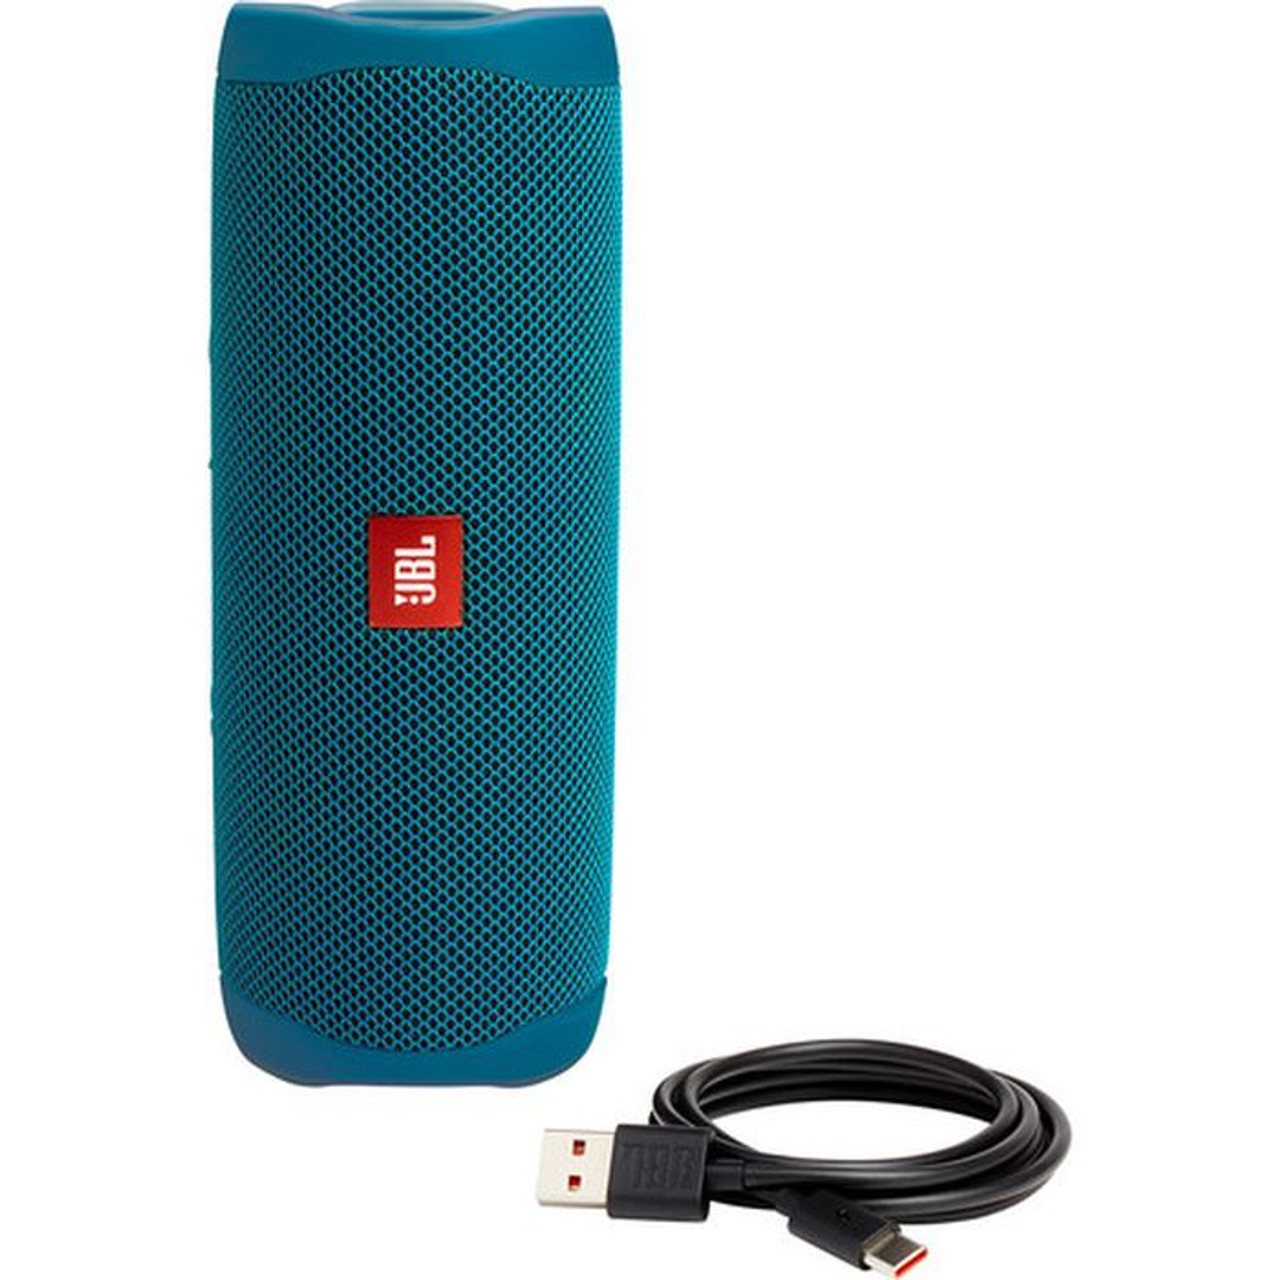 Eco JBLFLIP5ECOBLUAM-Z JBL Deal Parade -Certified Flip 5 Refurbished Bluetooth Speaker - Blue